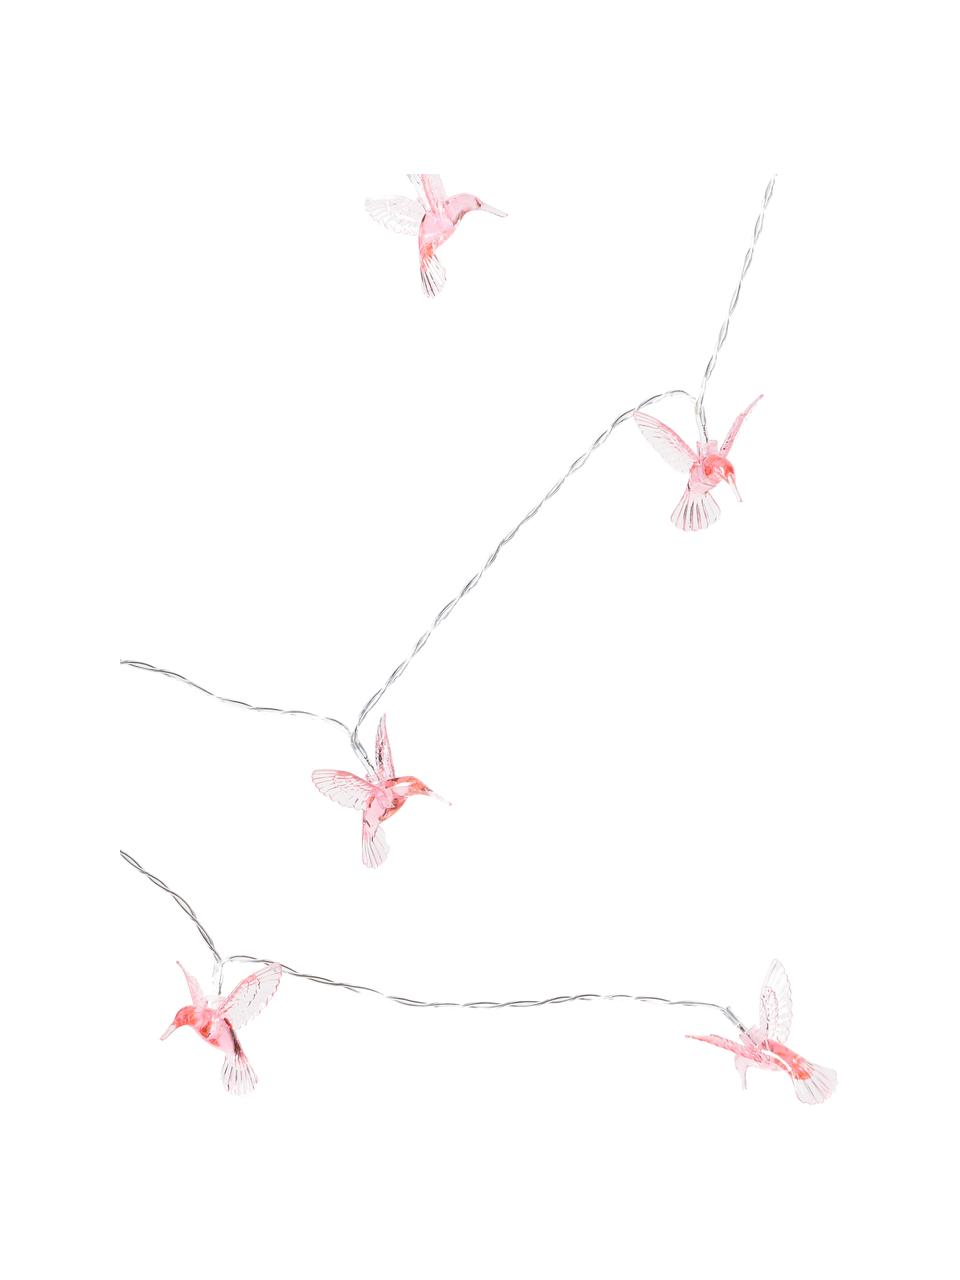 Girlanda świetlna LED Angels, dł. 170 cm, Tworzywo sztuczne, Transparentny, blady różowy, D 170 cm